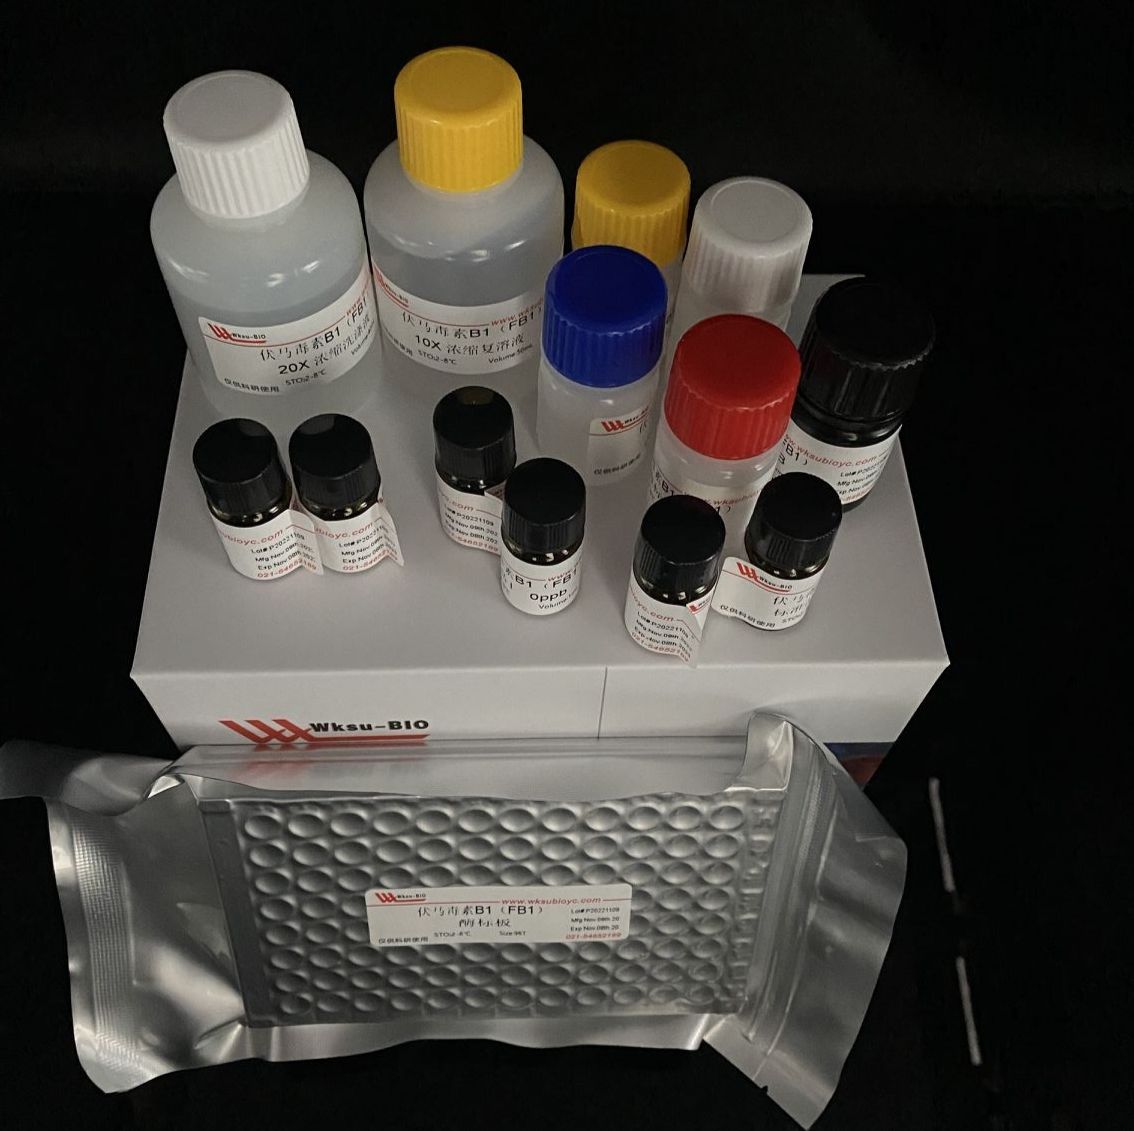 土壤精氨酸脱氨酶活性测定试剂盒